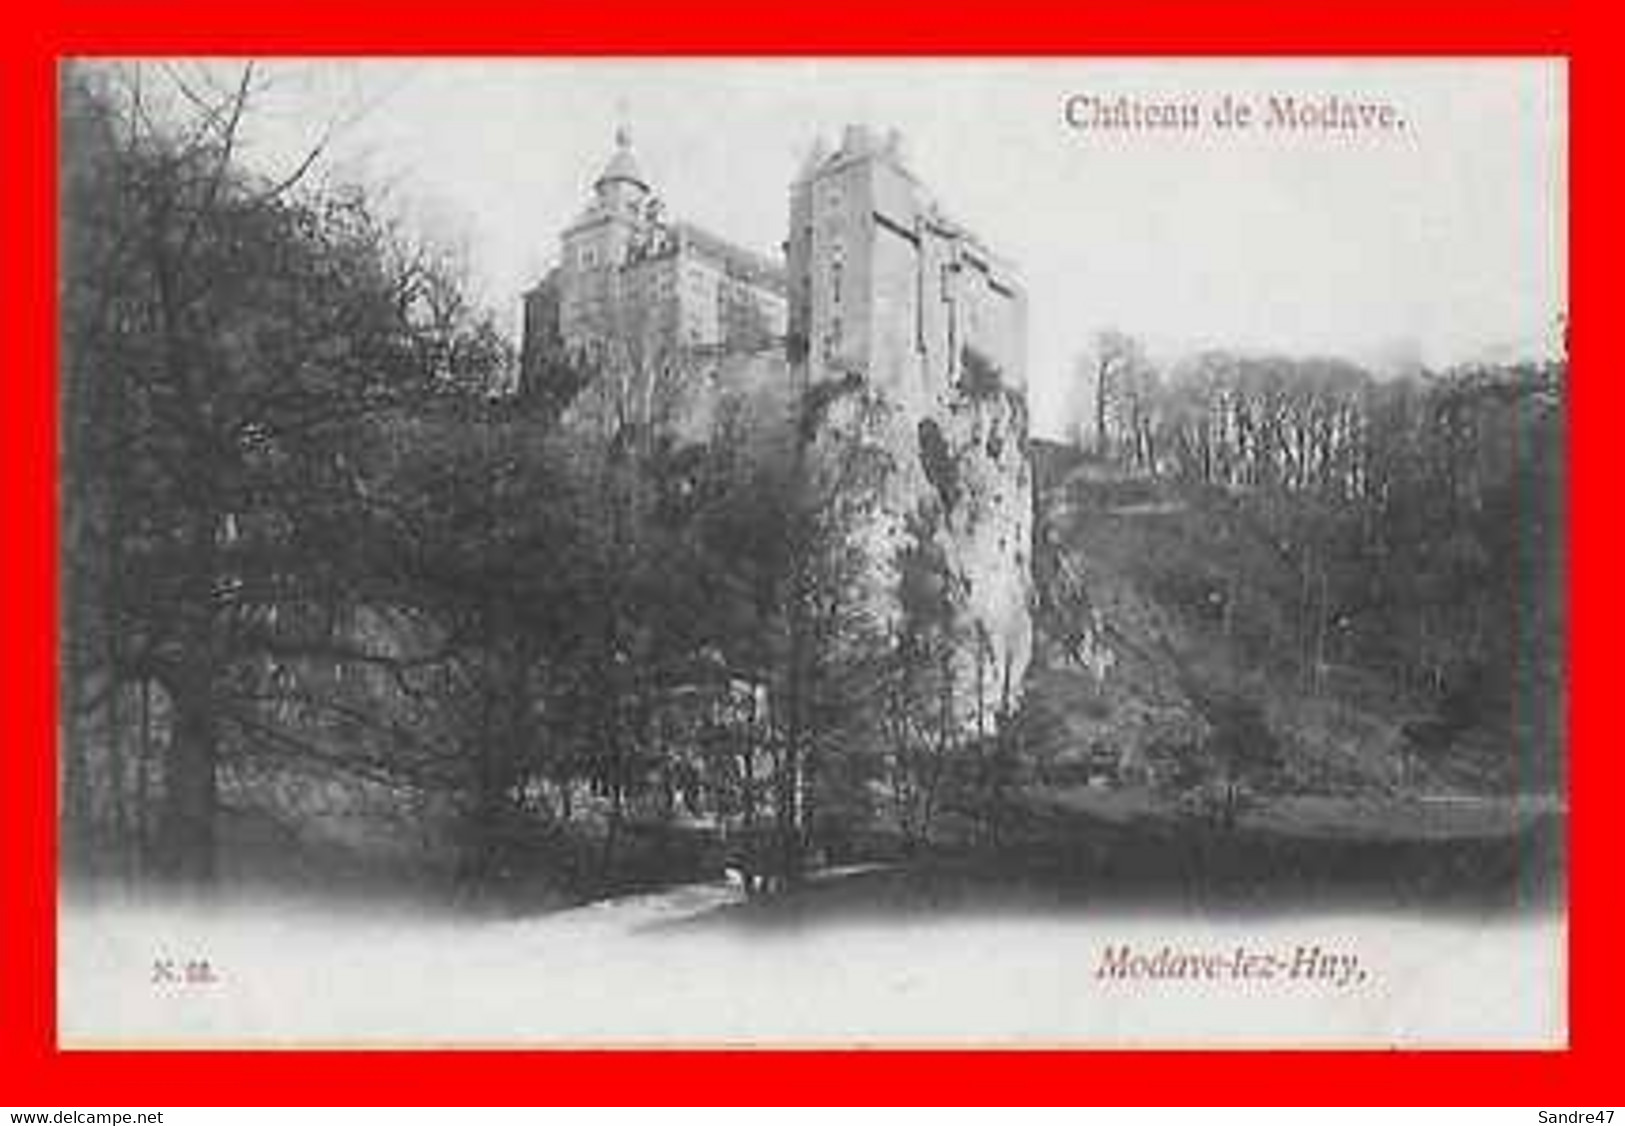 CPA MODAVE (Belgique)  Modave-lez-Huy, Le Château De Modave...P1116 - Modave